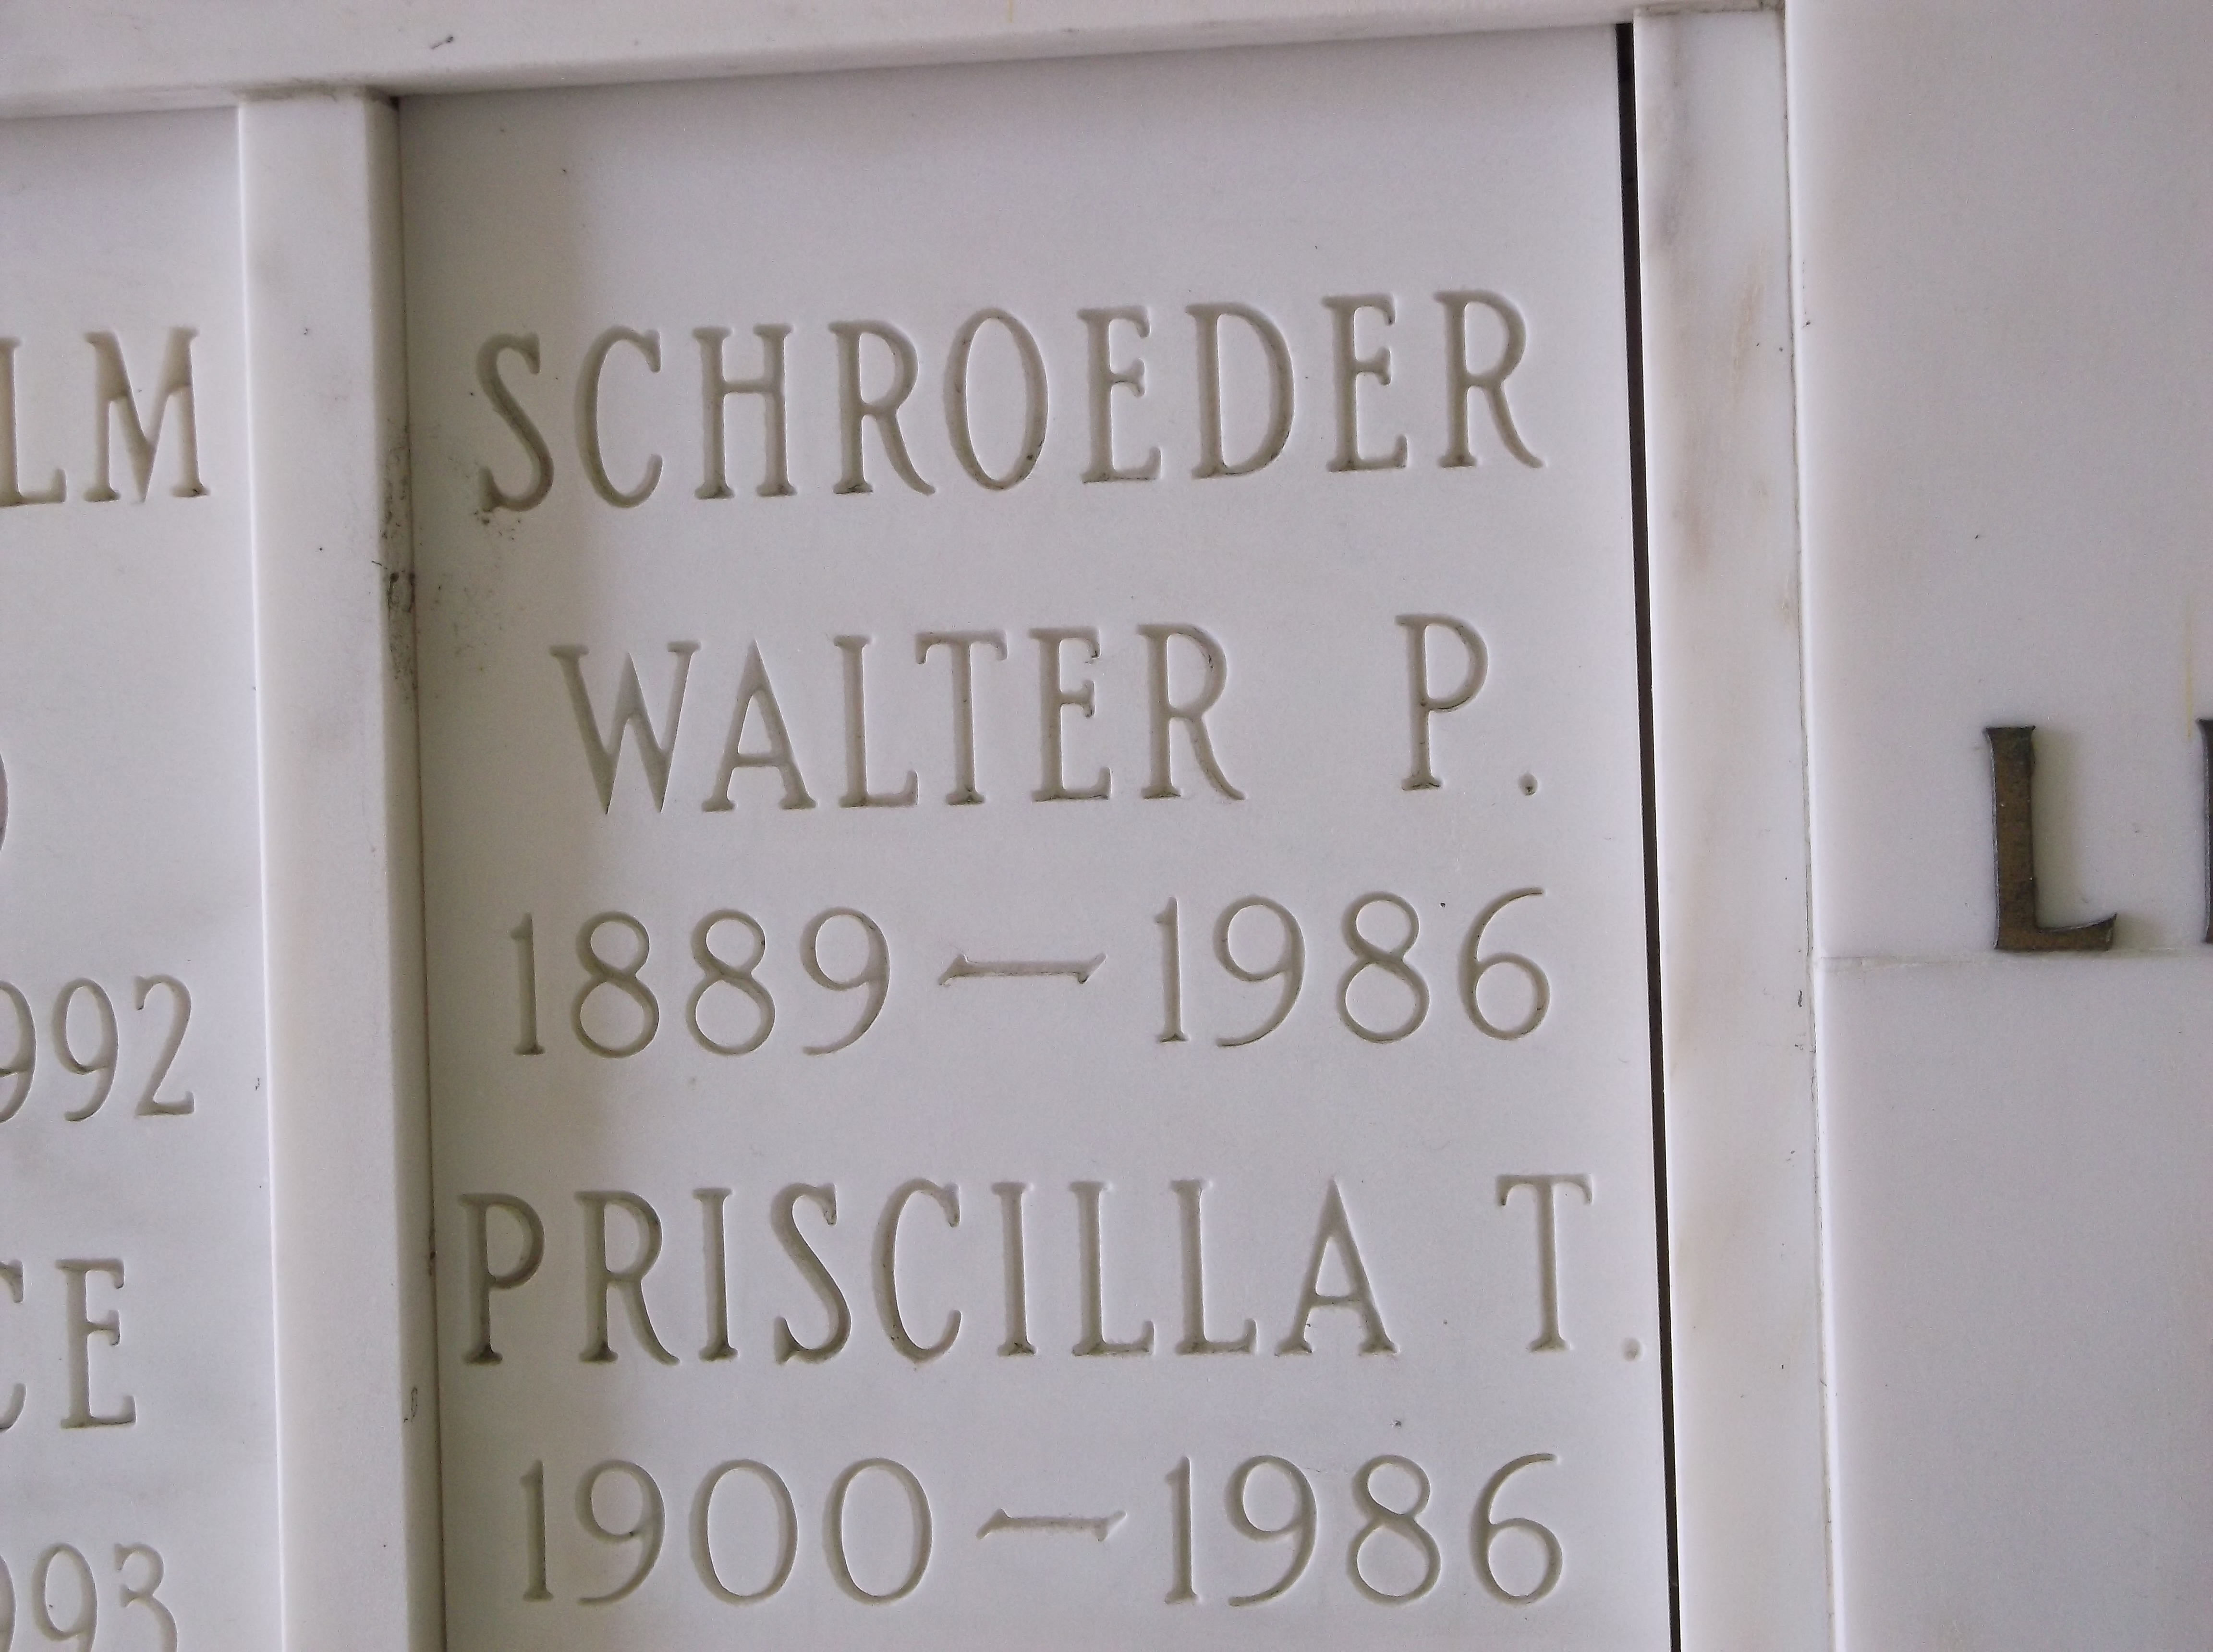 Priscilla T Schroeder